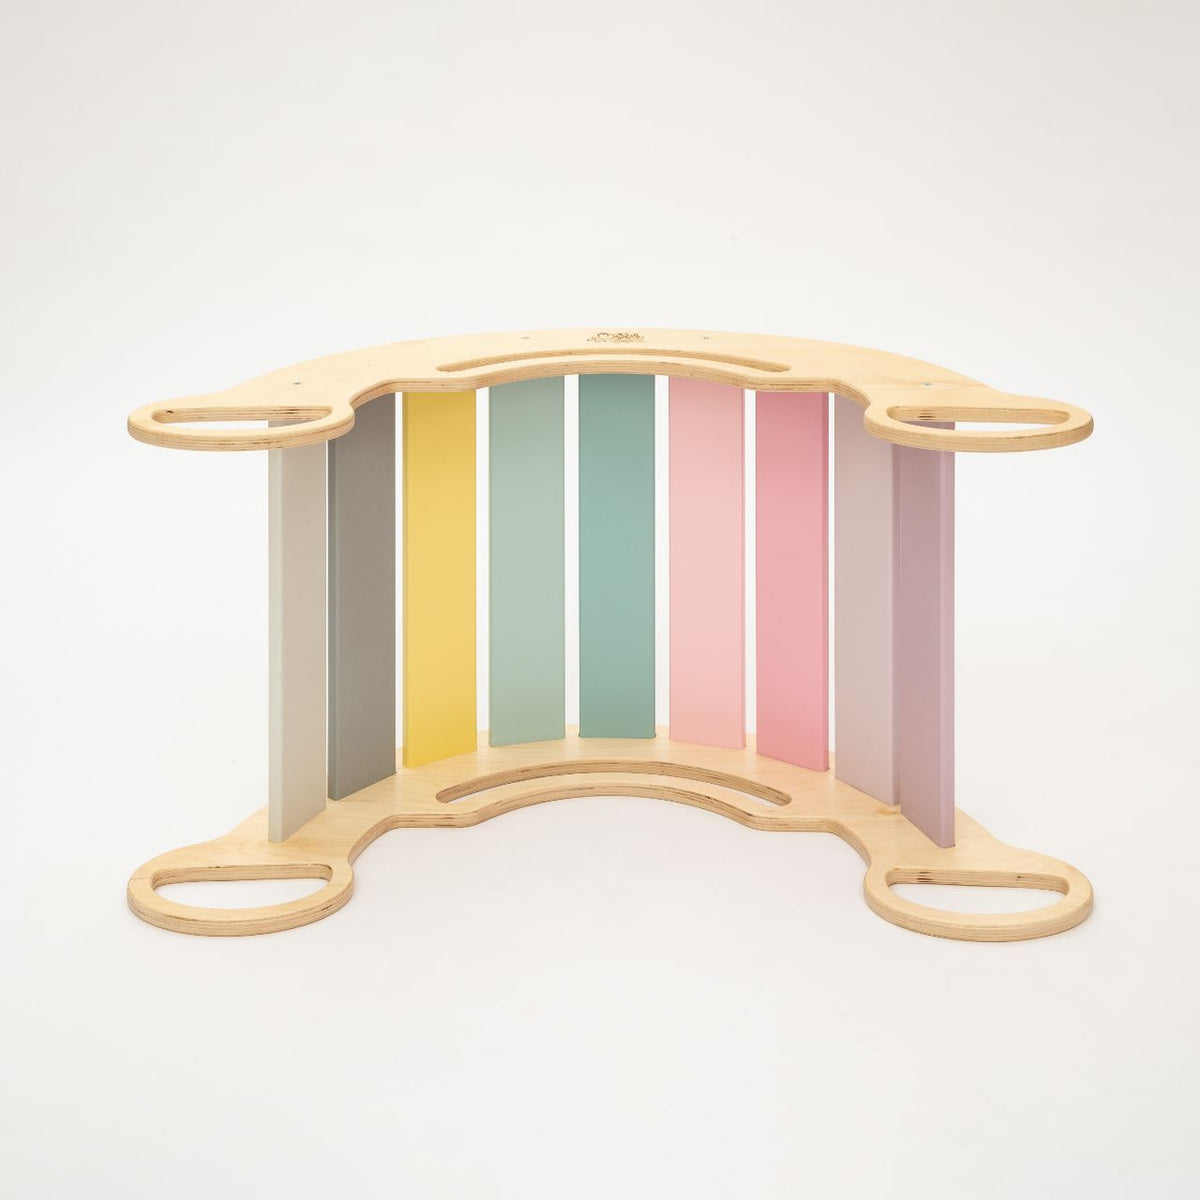 Altalena/rocker di equilibrio con tavola bifacciale - colori pastello